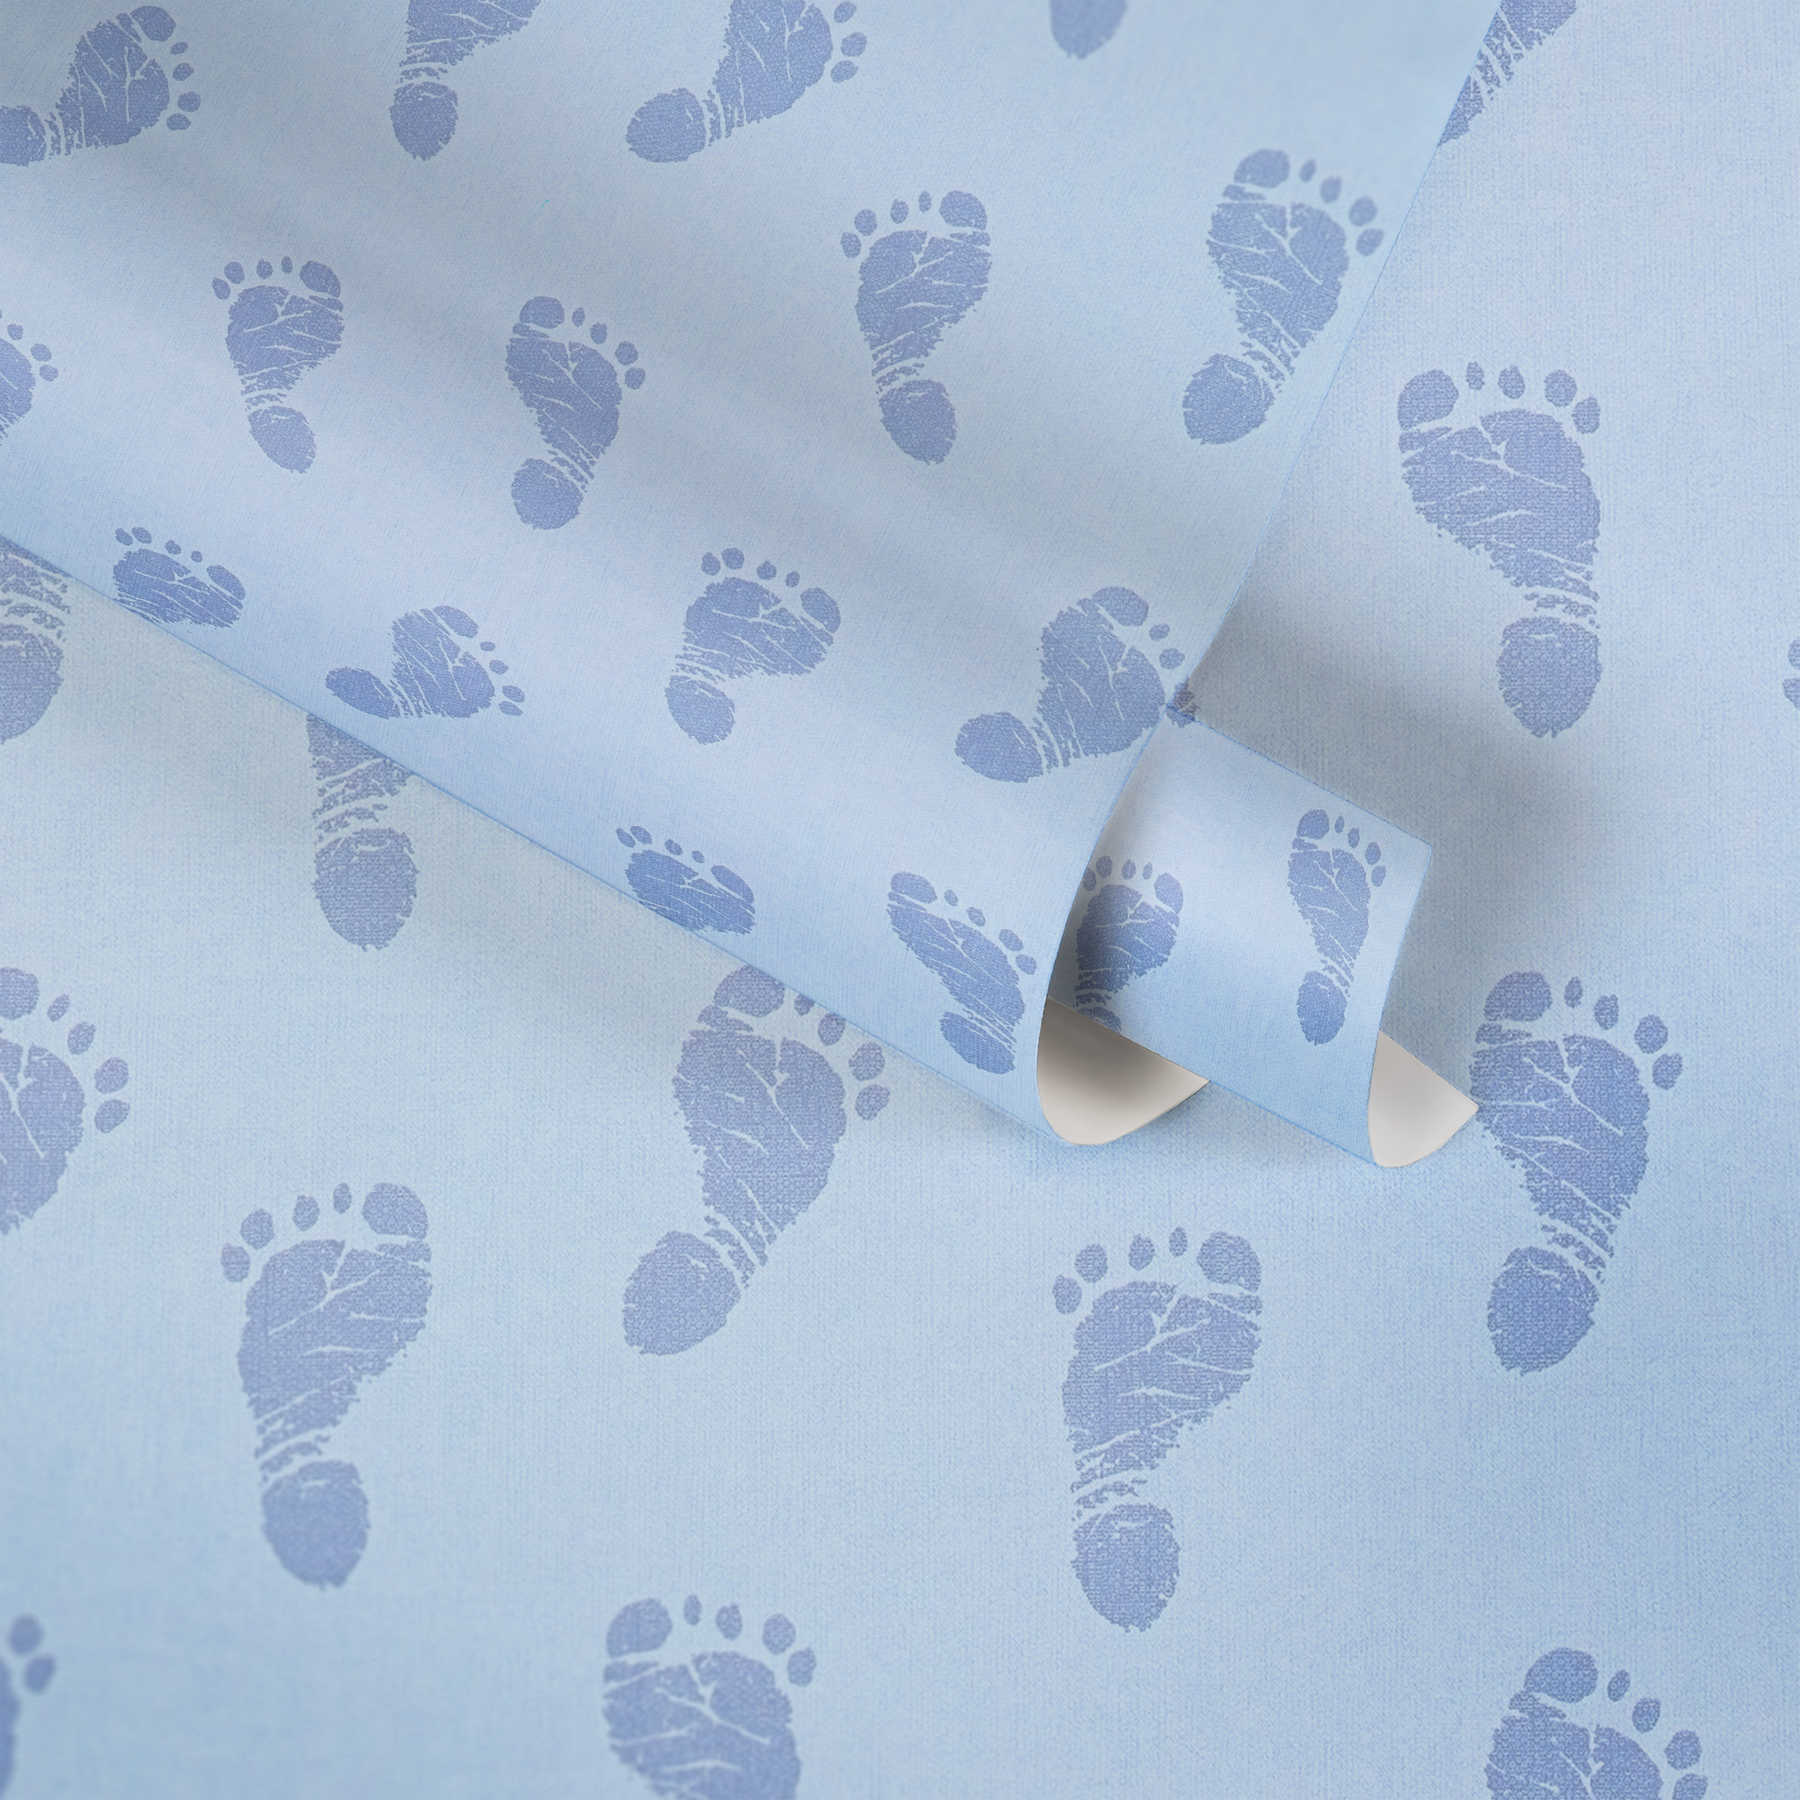             Kinderkamer behang baby voeten jongens - blauw, metallic
        